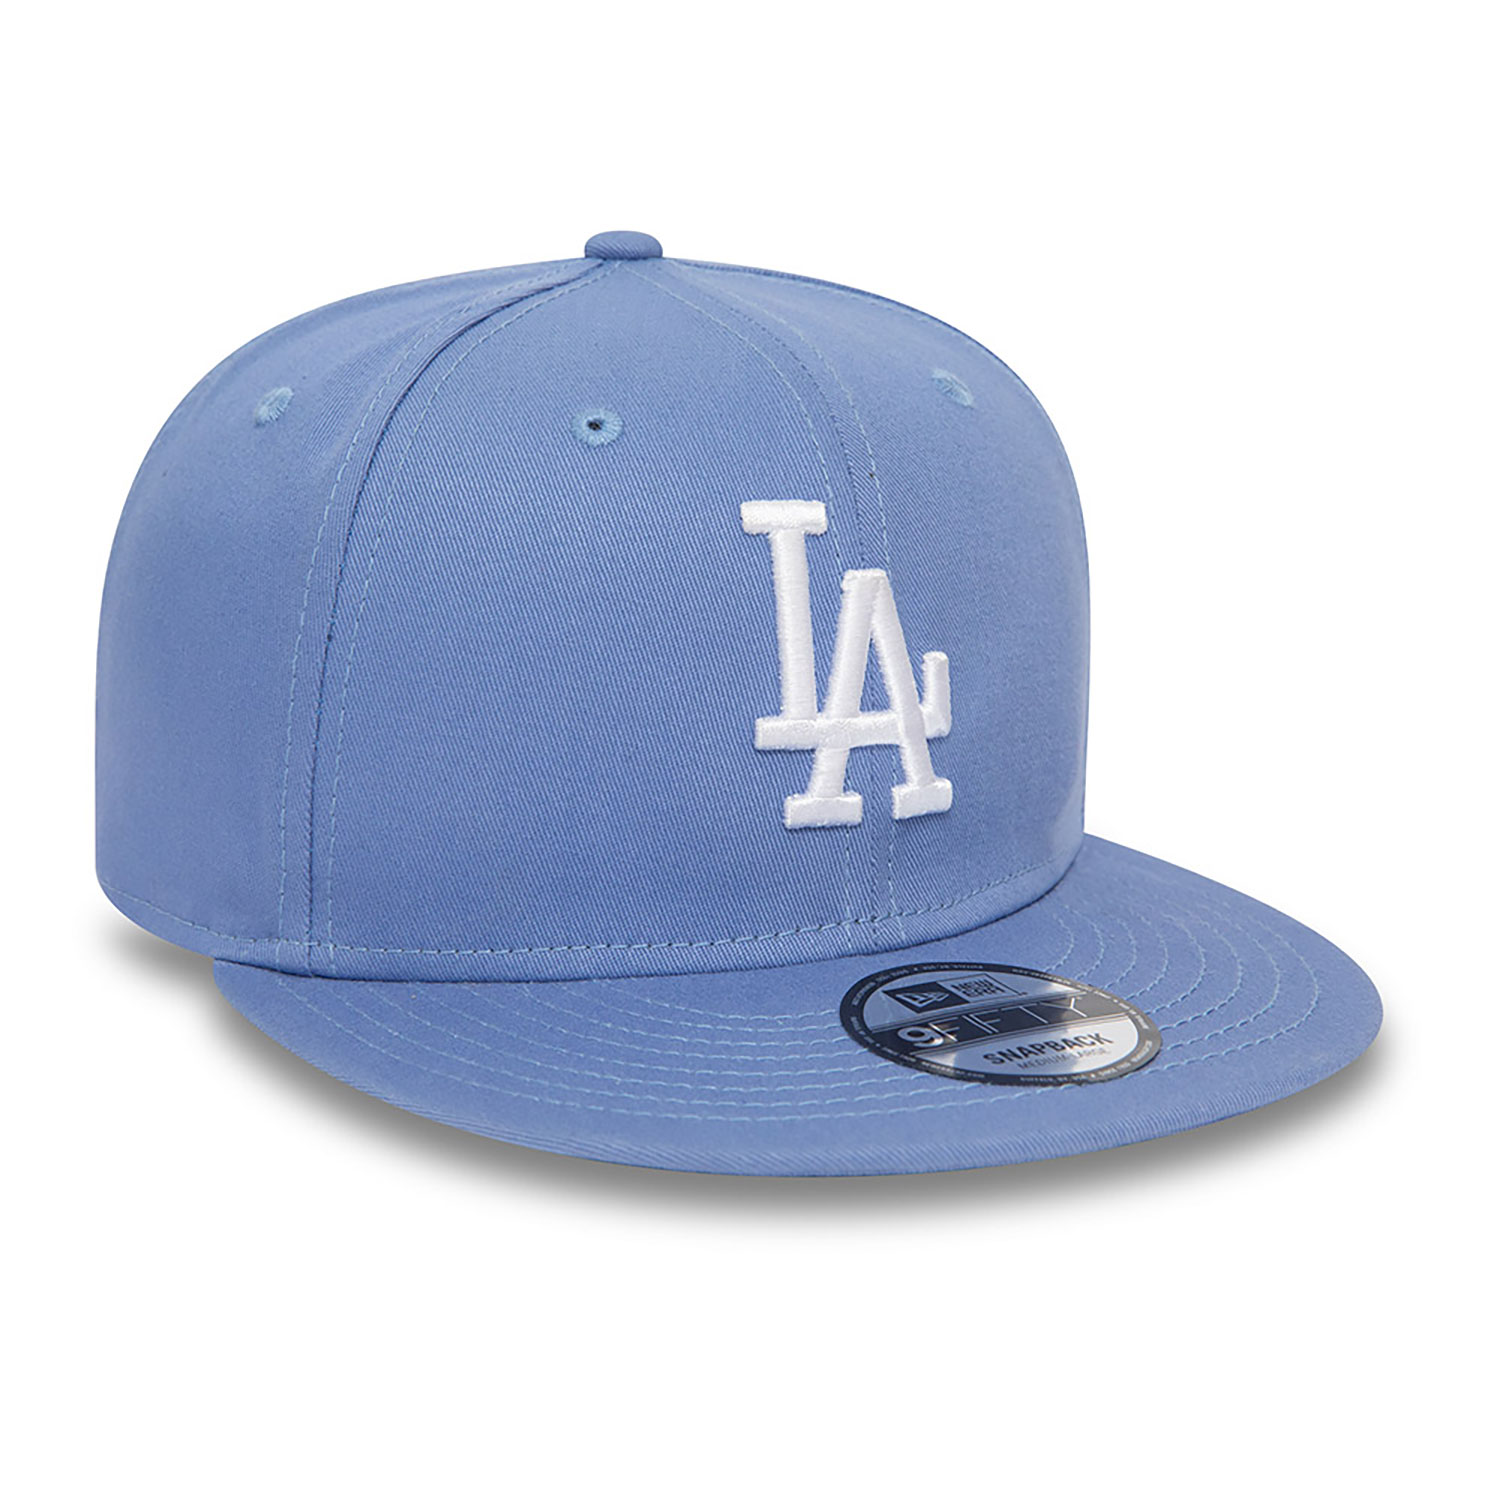 LA Dodgers League Essential Blue 9FIFTY Adjustable Cap